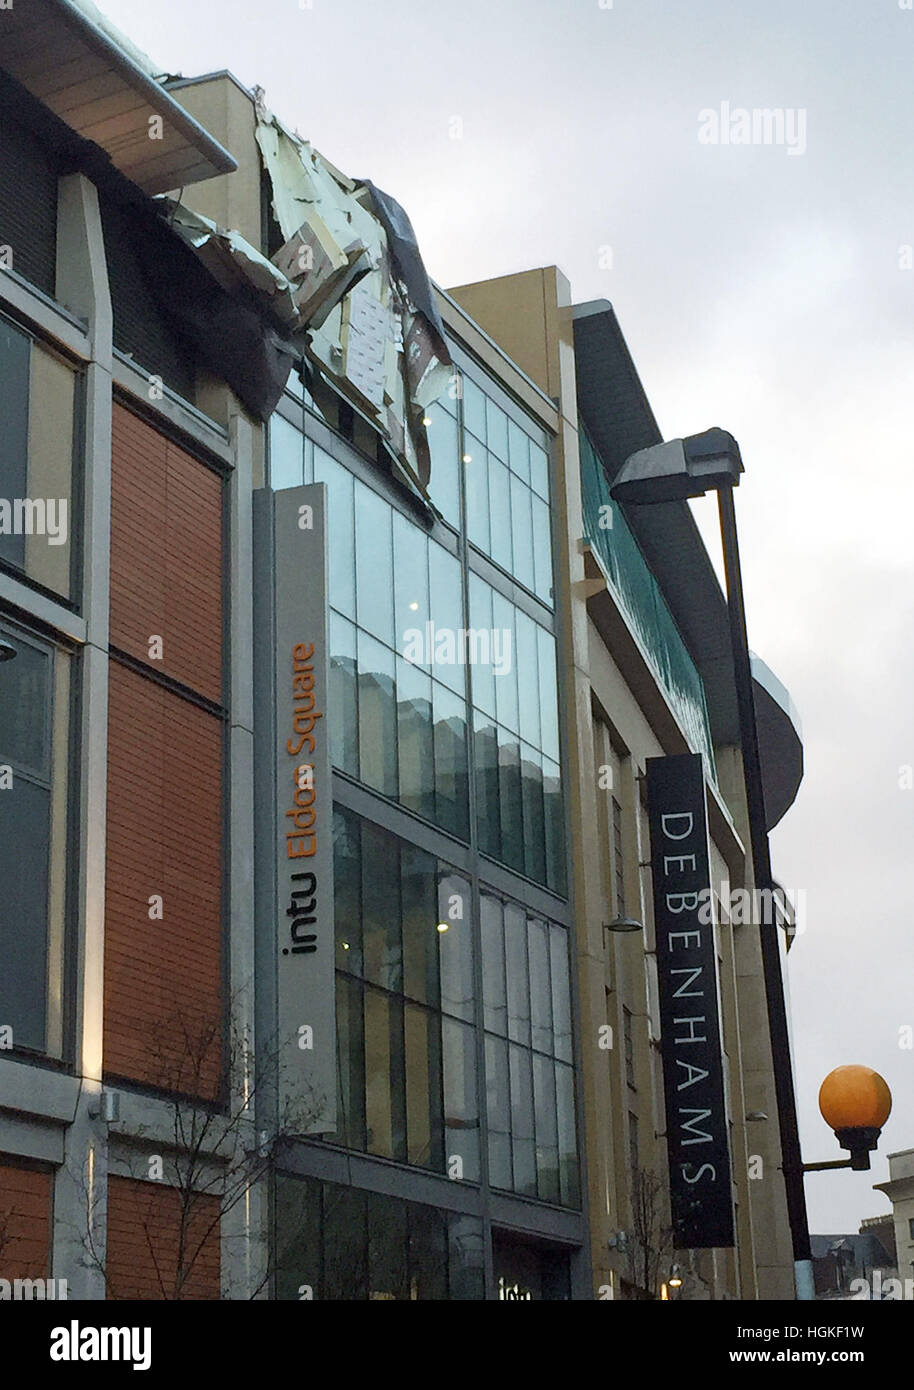 Bits du toit de Debenhams dans le centre commercial Eldon Square, Newcastle, qui a soufflé sur Newgate Street, comme des vents forts ont apporté le chaos et les coupures de courant qu'ils buffet certaines parties du pays. Banque D'Images